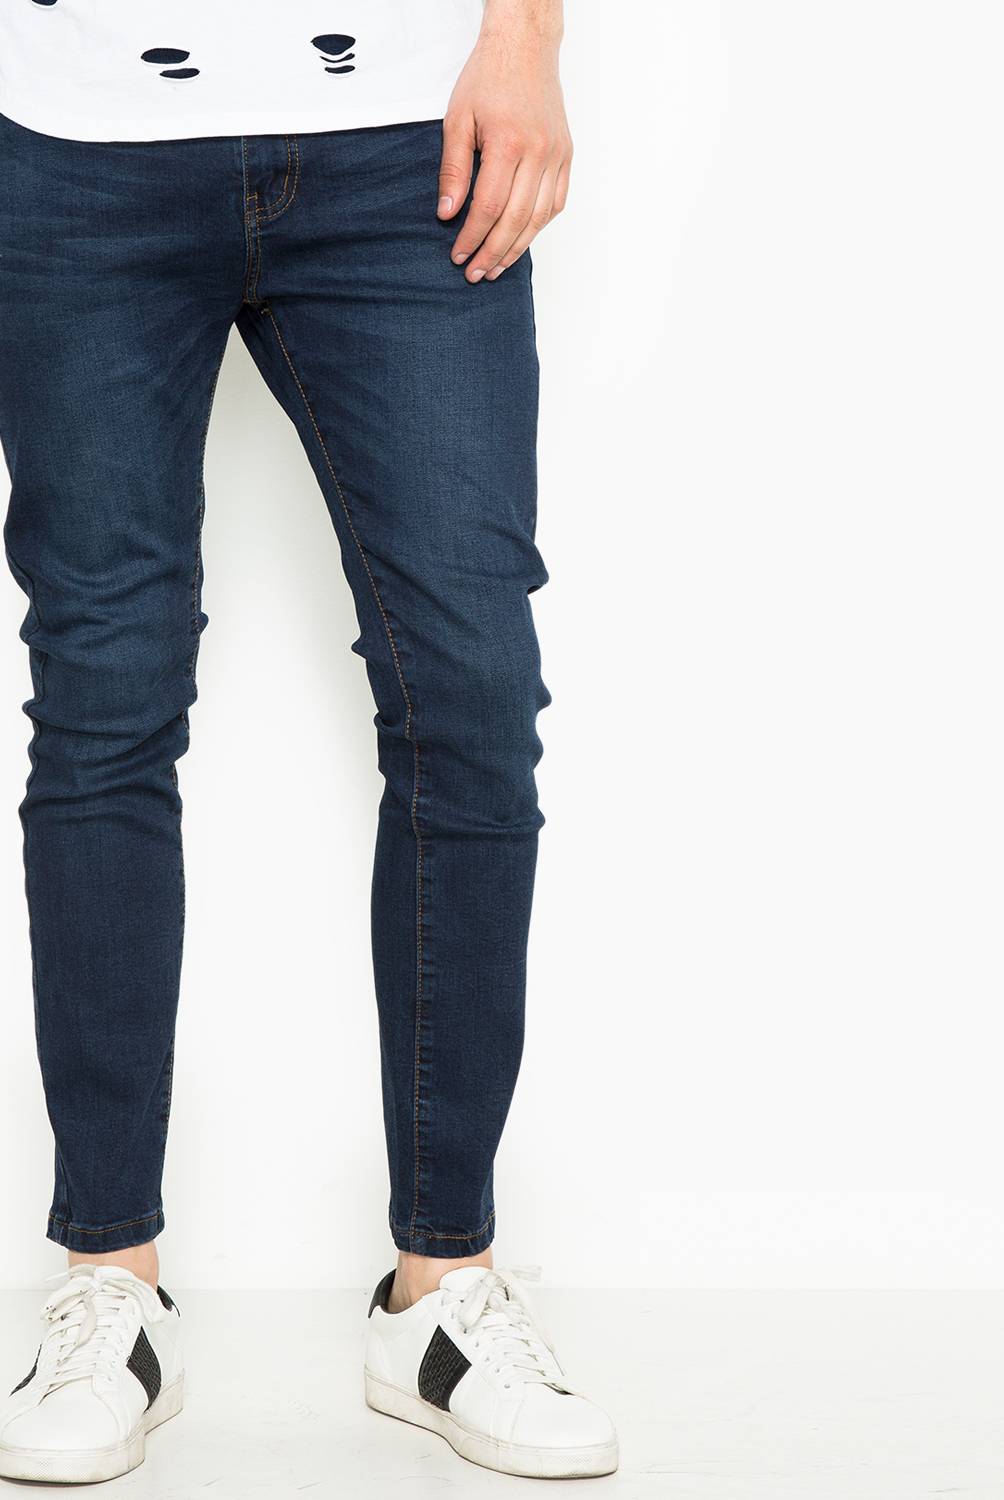 ELLUS NEGOCIO ESPECIAL - Jeans Skinny Fit Hombre Ellus